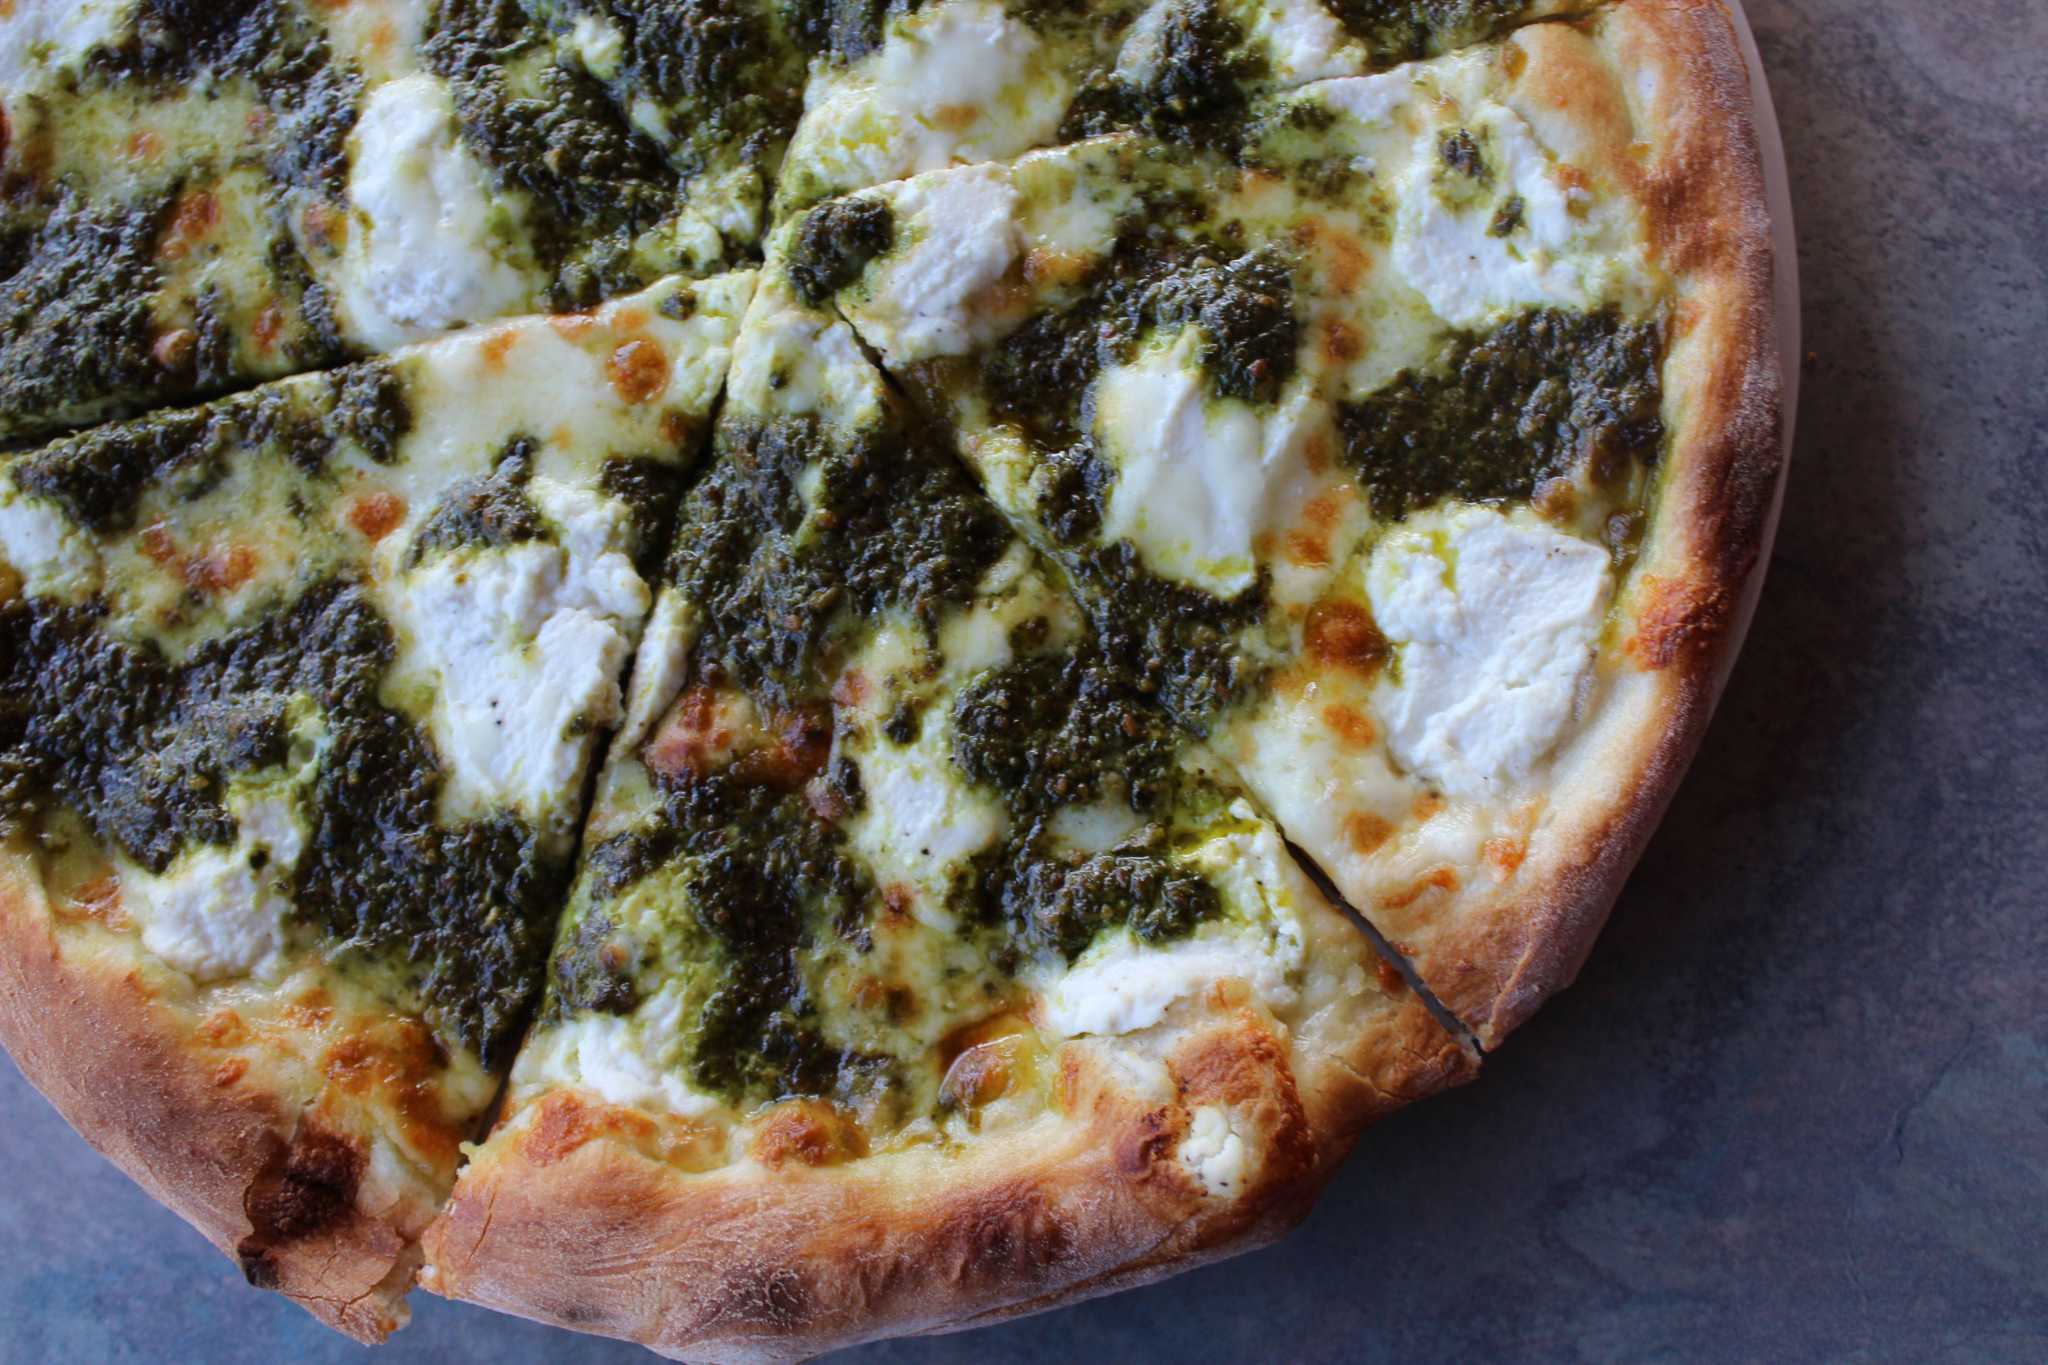 John's Best Pizza in Norwalk è diventata Ponza, un cenno alle radici della famiglia sull'isola italiana